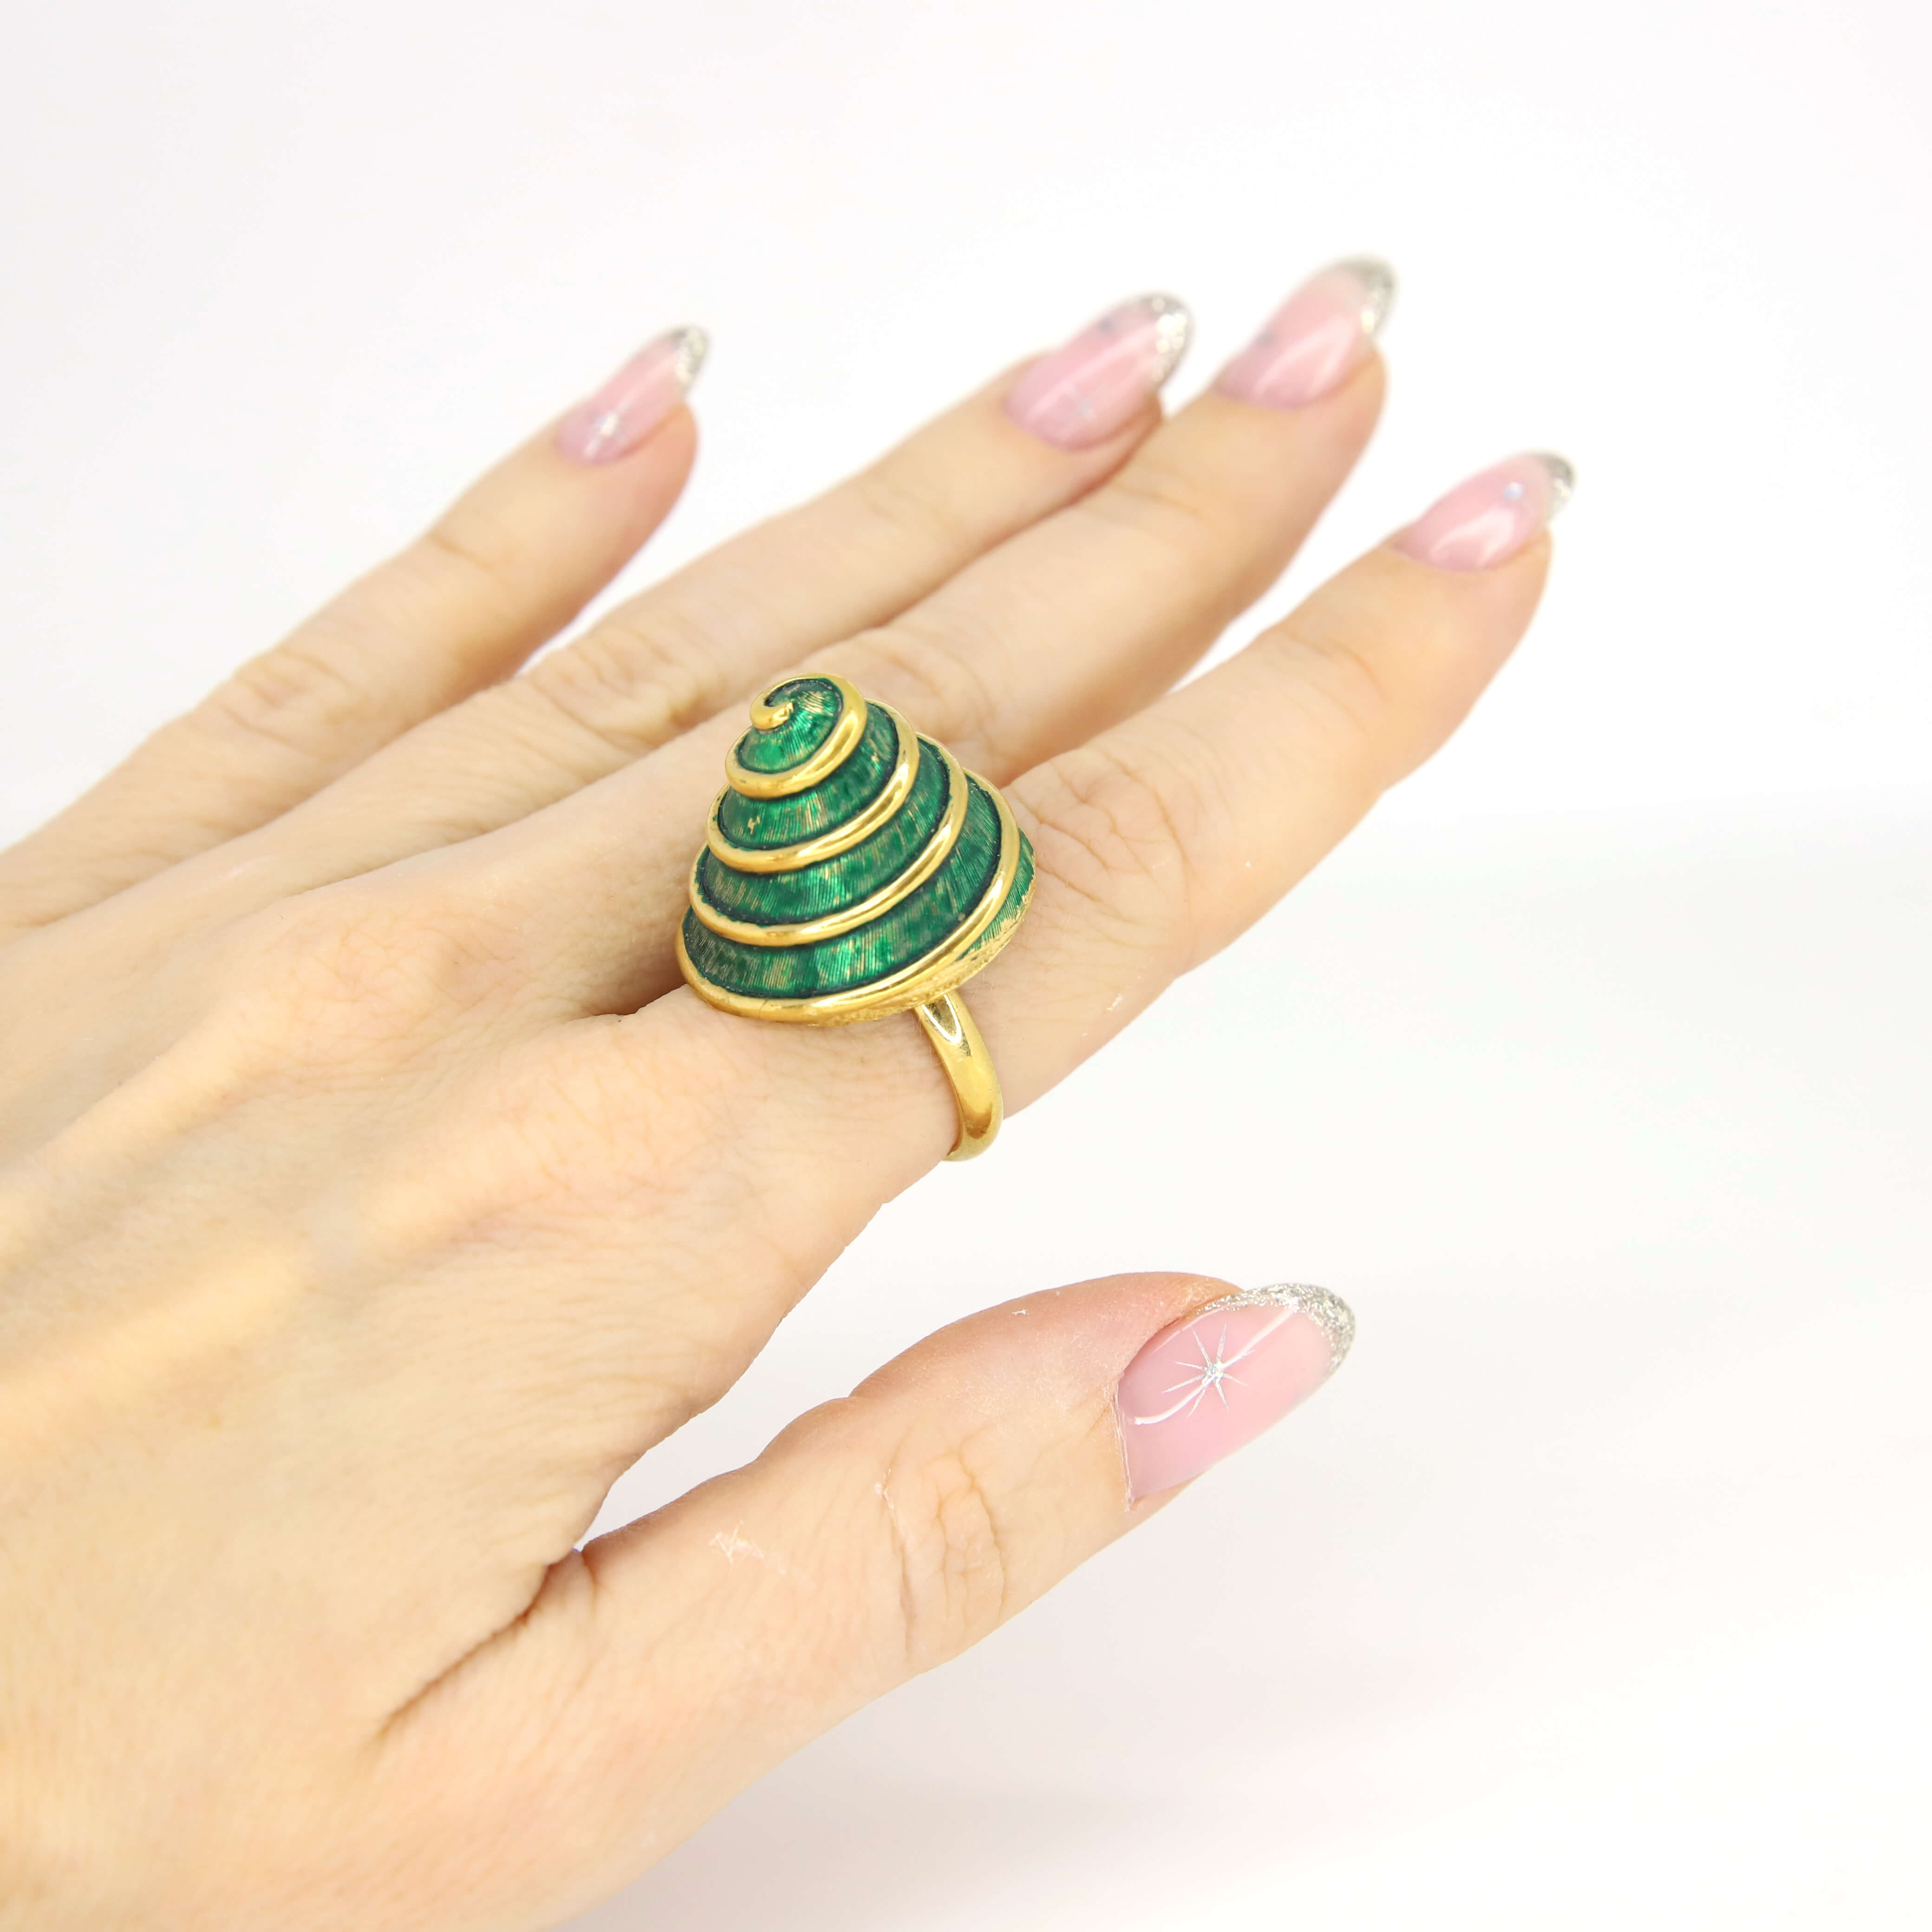 Винтажное кольцо Boucher размер 16.5-17.5, цвет Зеленый, фото 2